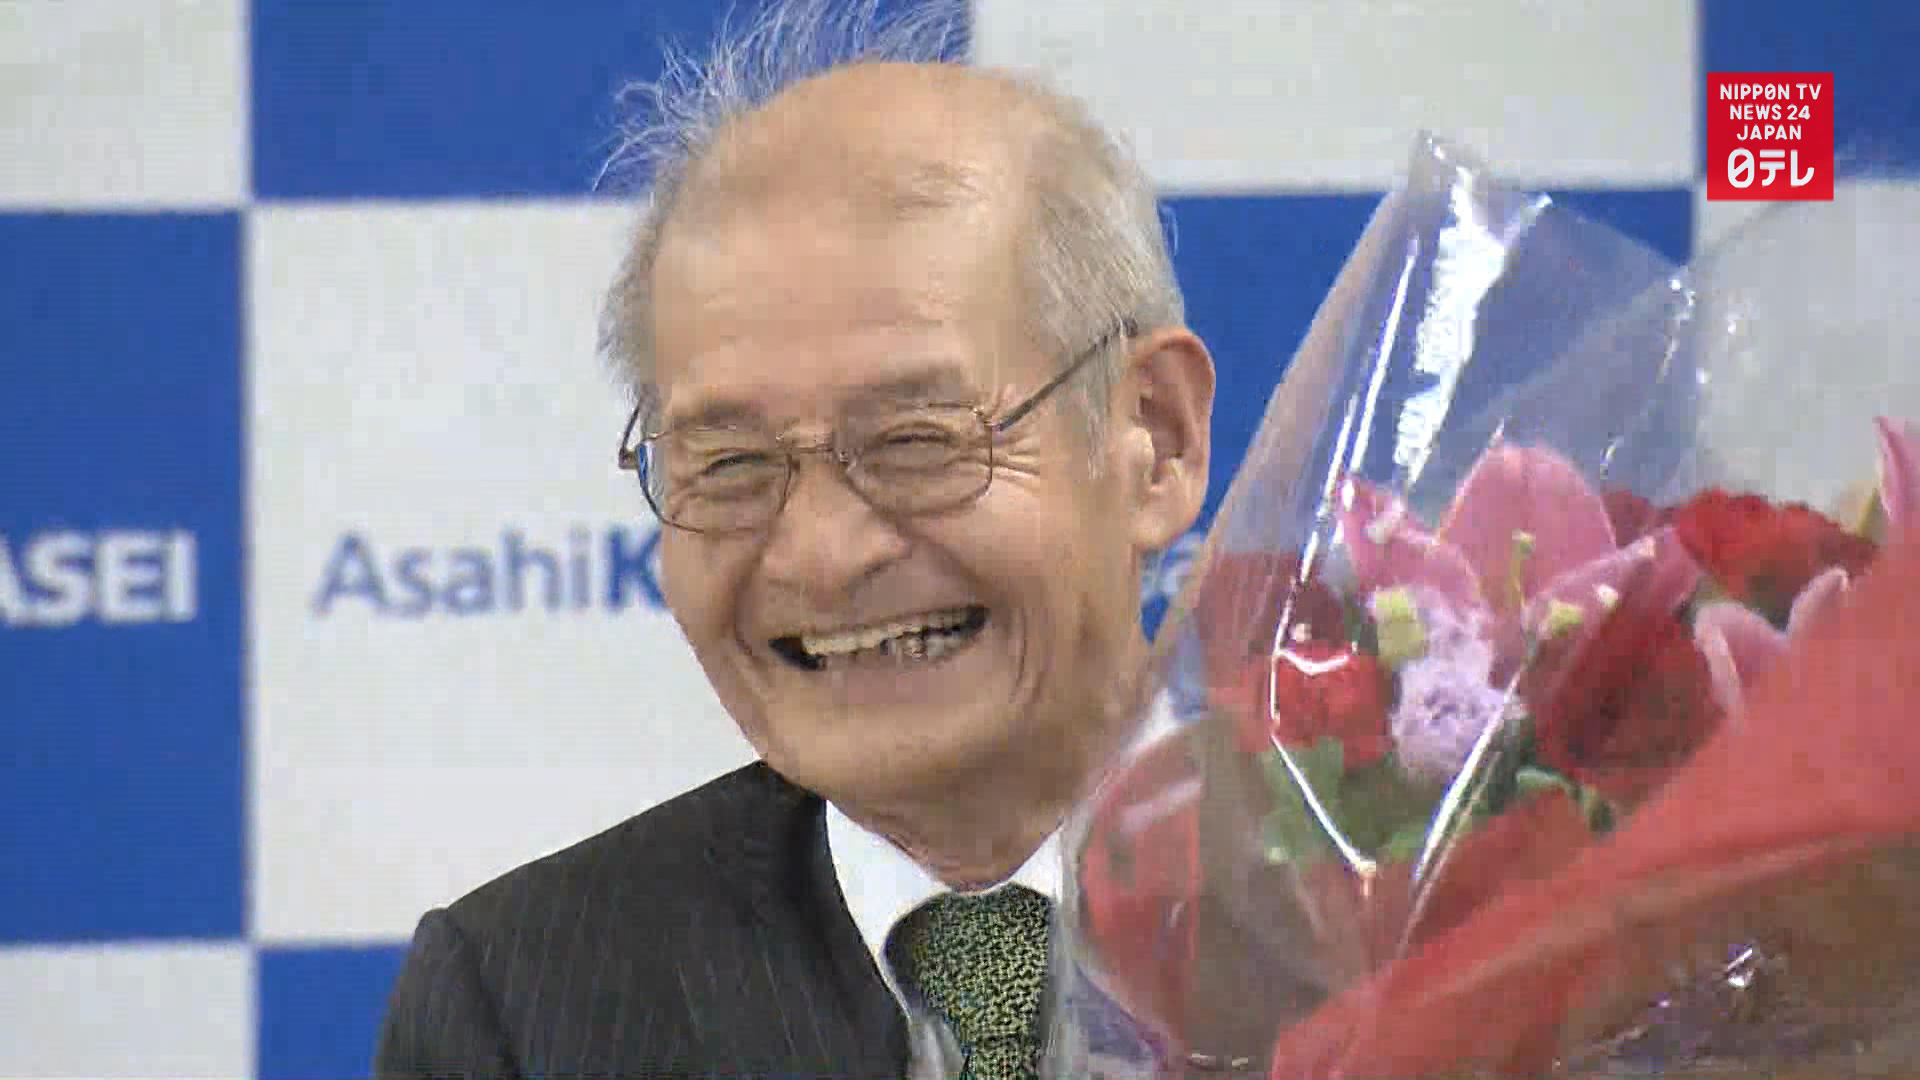 Japan's Nobel prize winner speaks of difficulties